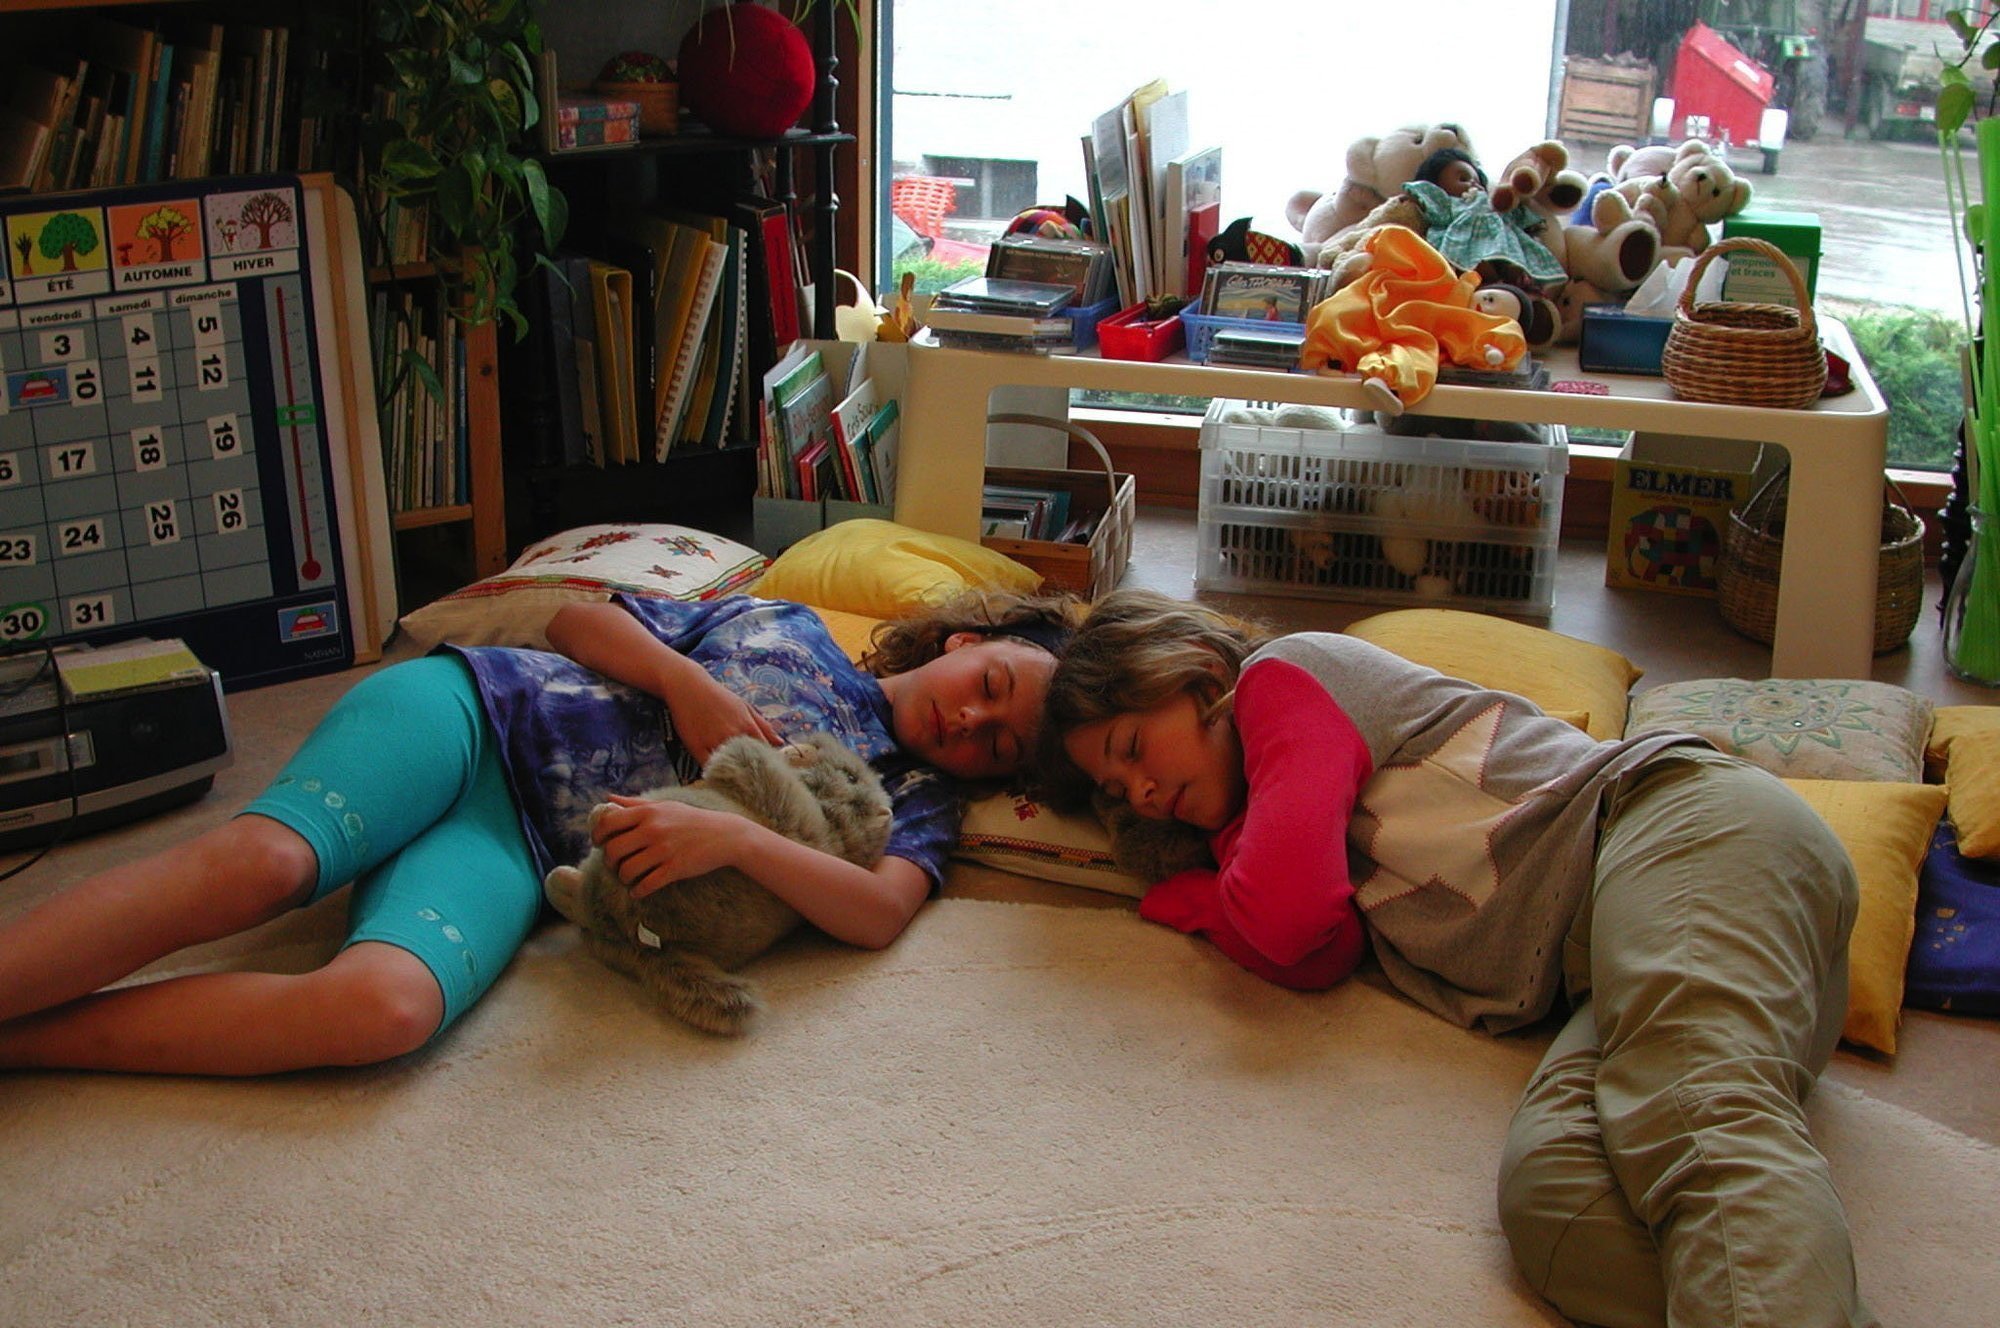 Semaine du sommeil au groupement scolaire d'Aubonne. Sensibilisation à l'endormissement facilité et efficace. A drte, Caroline Chablais, 10 ans, 4 P1, Aubonne. à gche, Gaëlle Nydegger, 10 ans, 4P1, Aubonne.